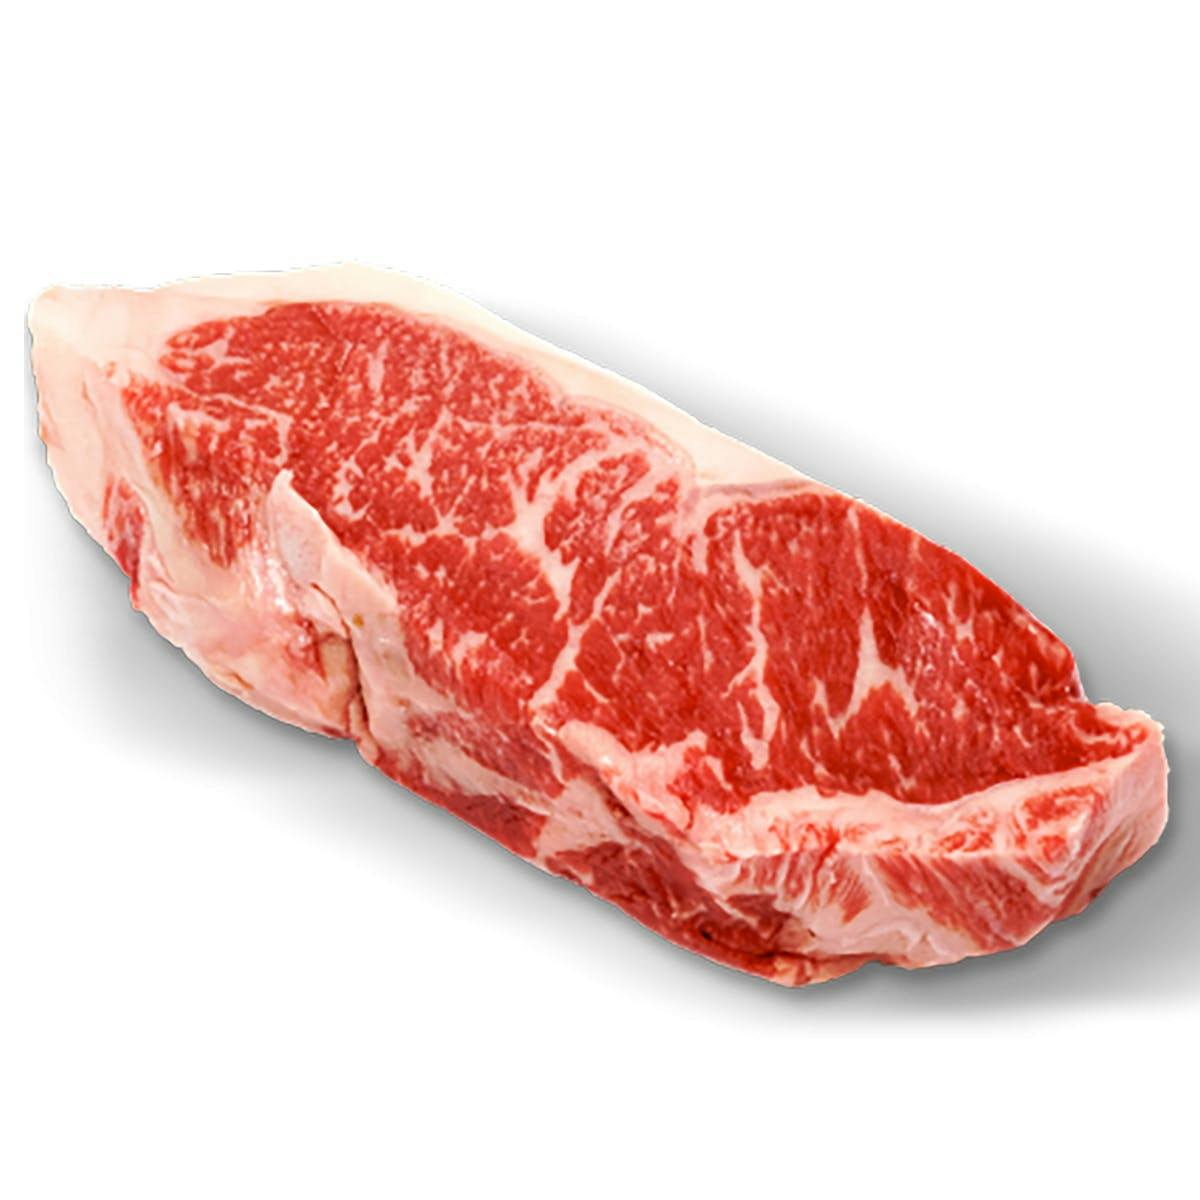 https://goldbelly.imgix.net/uploads/showcase_media_asset/image/96237/california-reserve-new-york-steaks-12-pack.d08b10cdbd146d7c3635d822ed9fd389.jpg?ixlib=rails-3.0.2